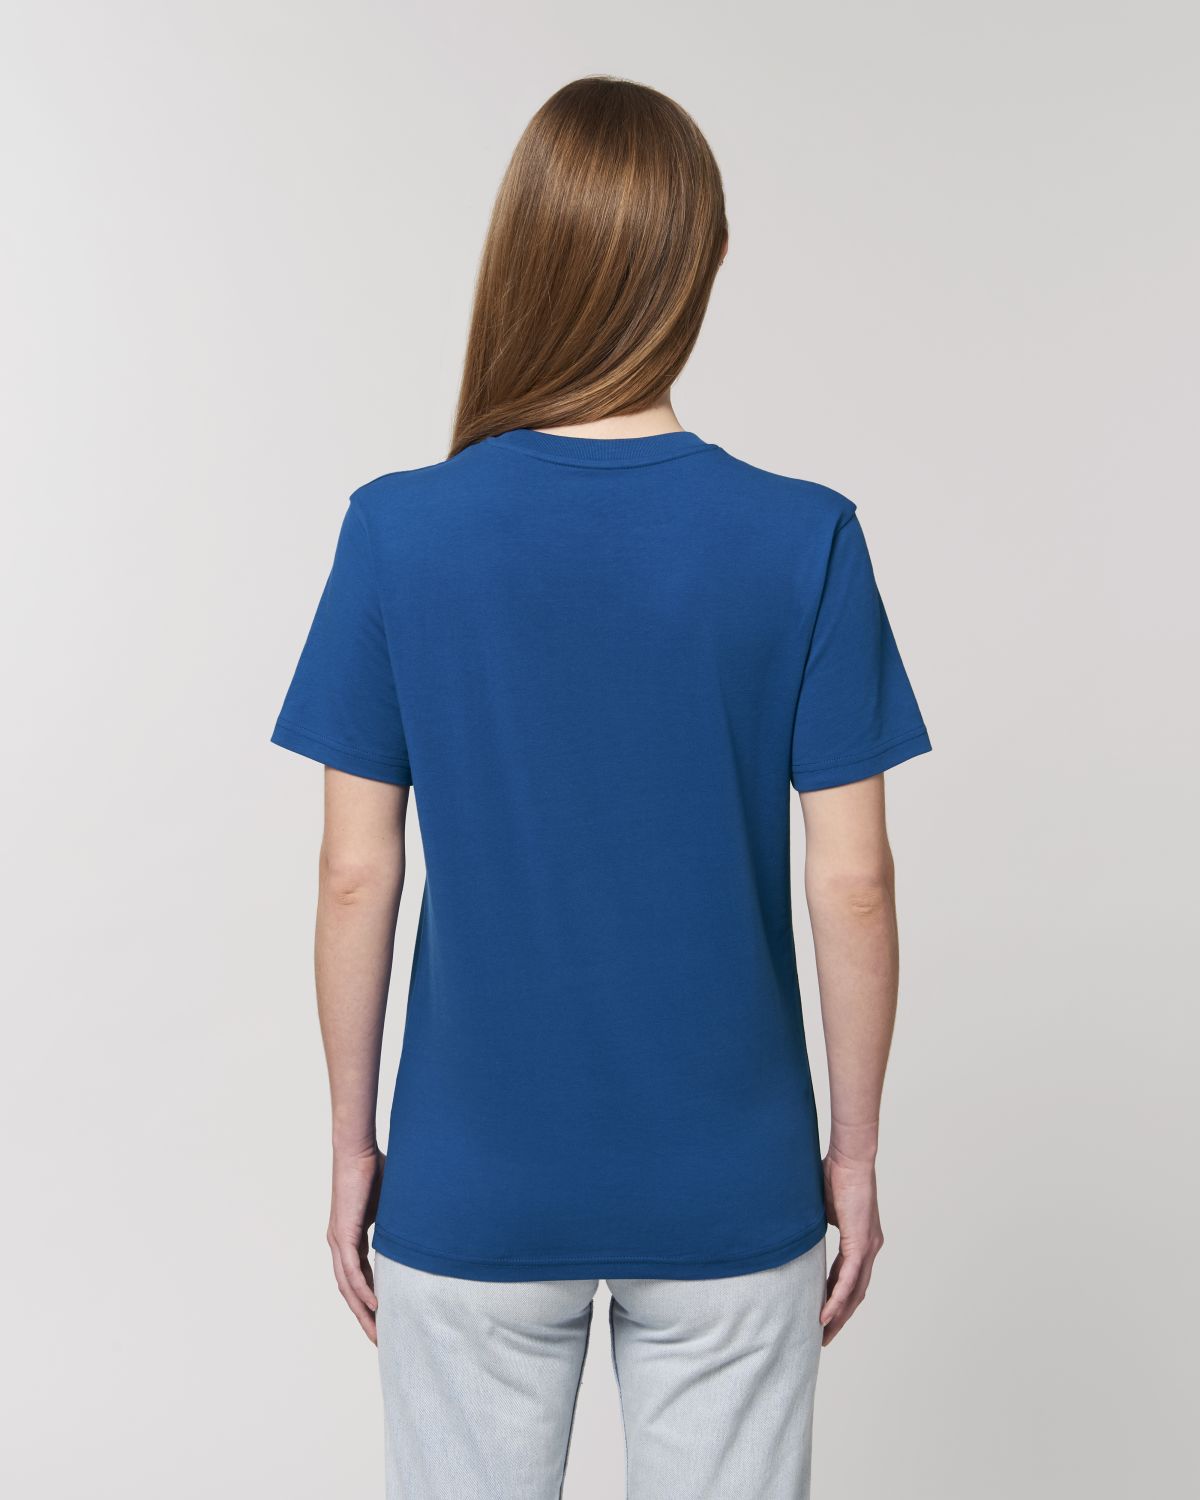 T-Shirt Femme IMMORTAL Bleu - DP